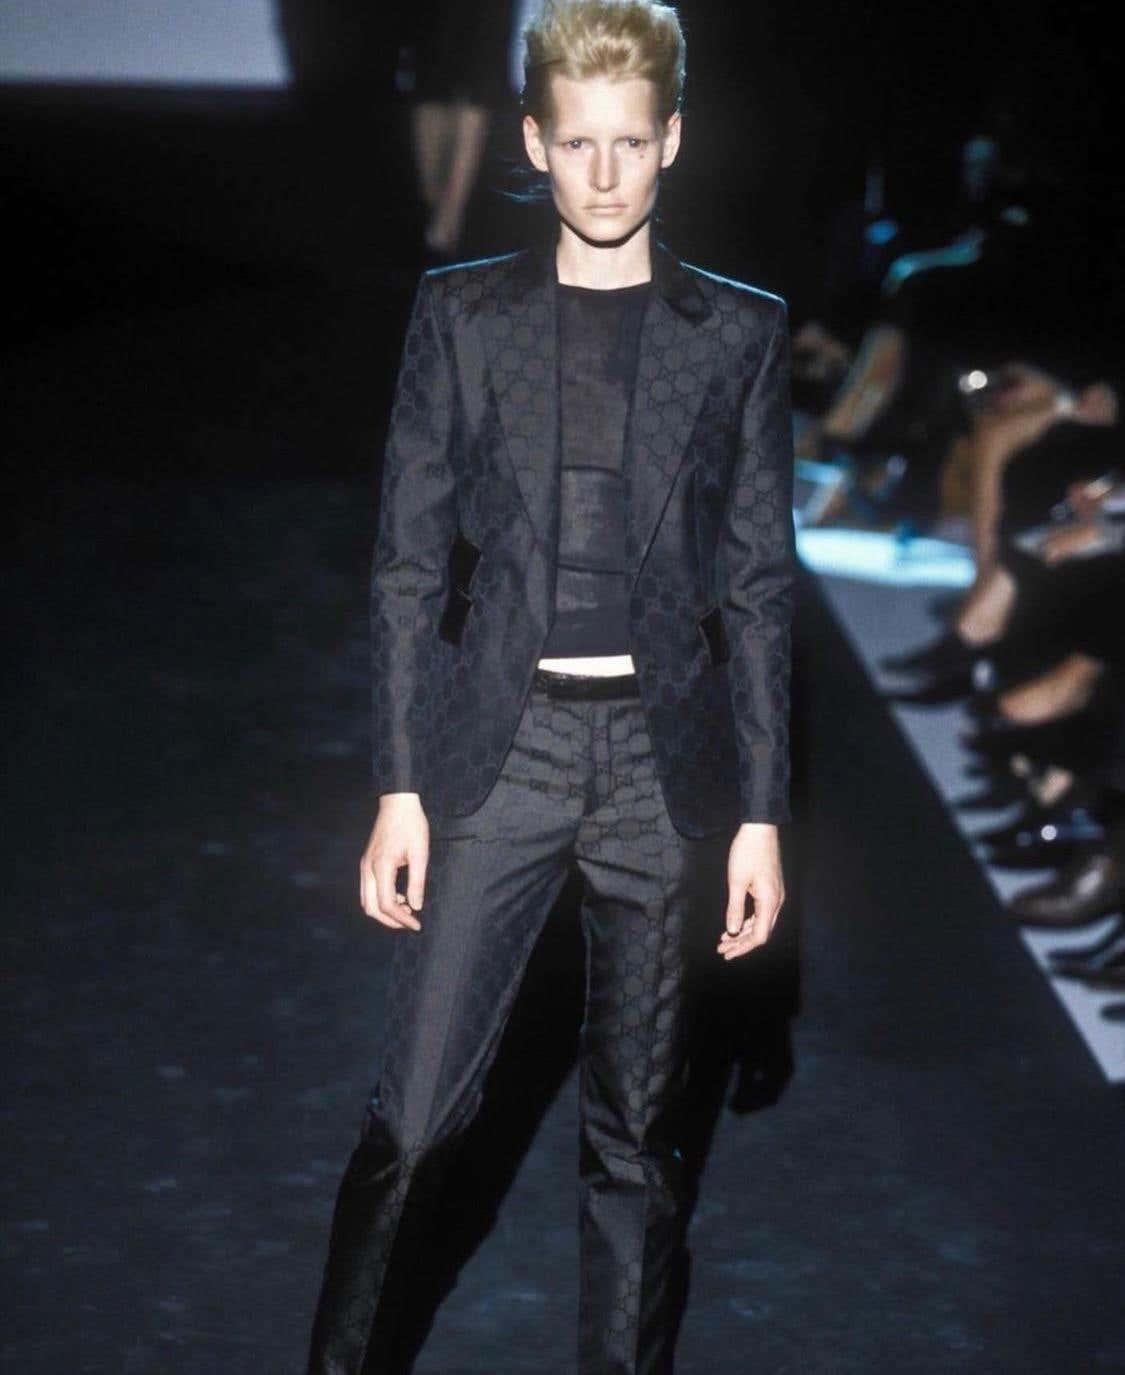 Seltener Gucci Hosenanzug mit braunem GG-Monogramm. Die schwarze Version dieses gewebten GG-Prints war auf dem Gucci-Laufsteg für die Saison 1998 auf mehreren Modellen zu sehen. Der Anzug verfügt über verdeckte Knöpfe und eine diskrete Tasche auf